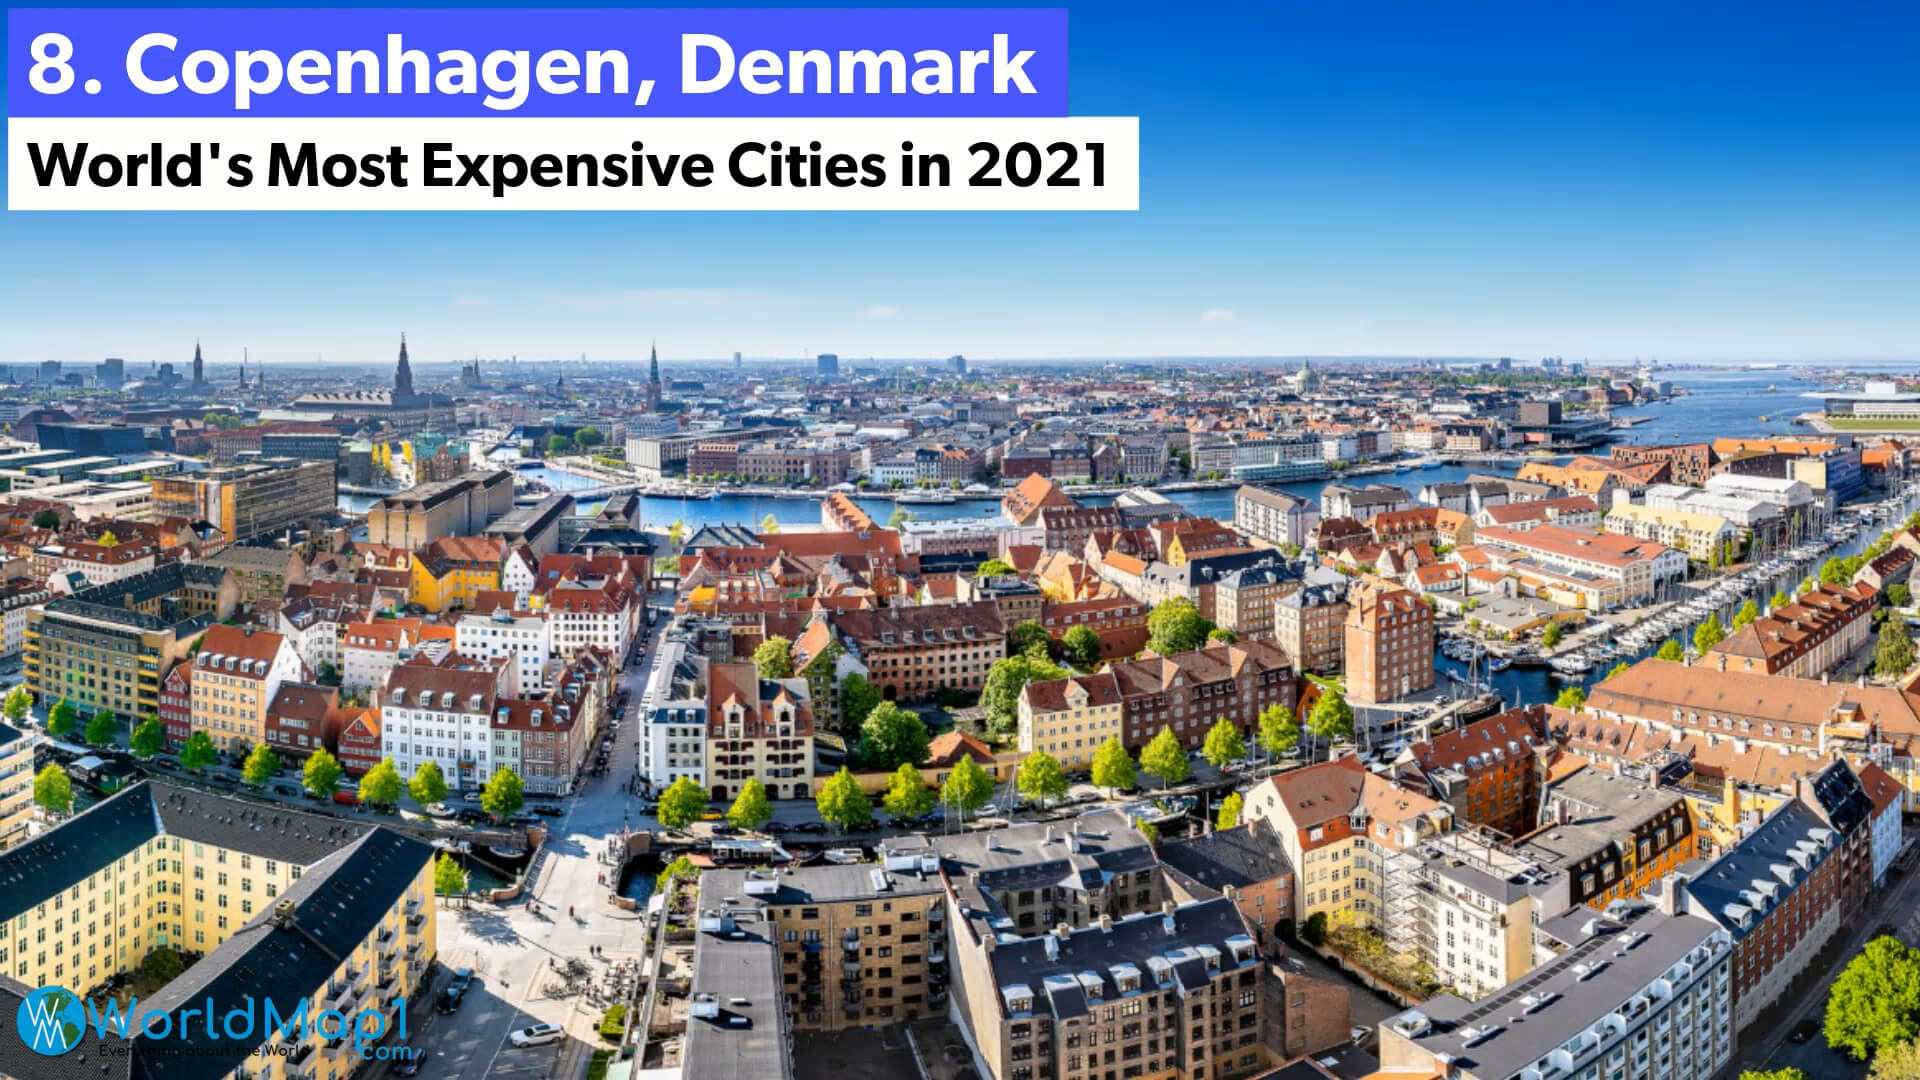 Les villes les plus chères du monde - Copenhagen, Danemark